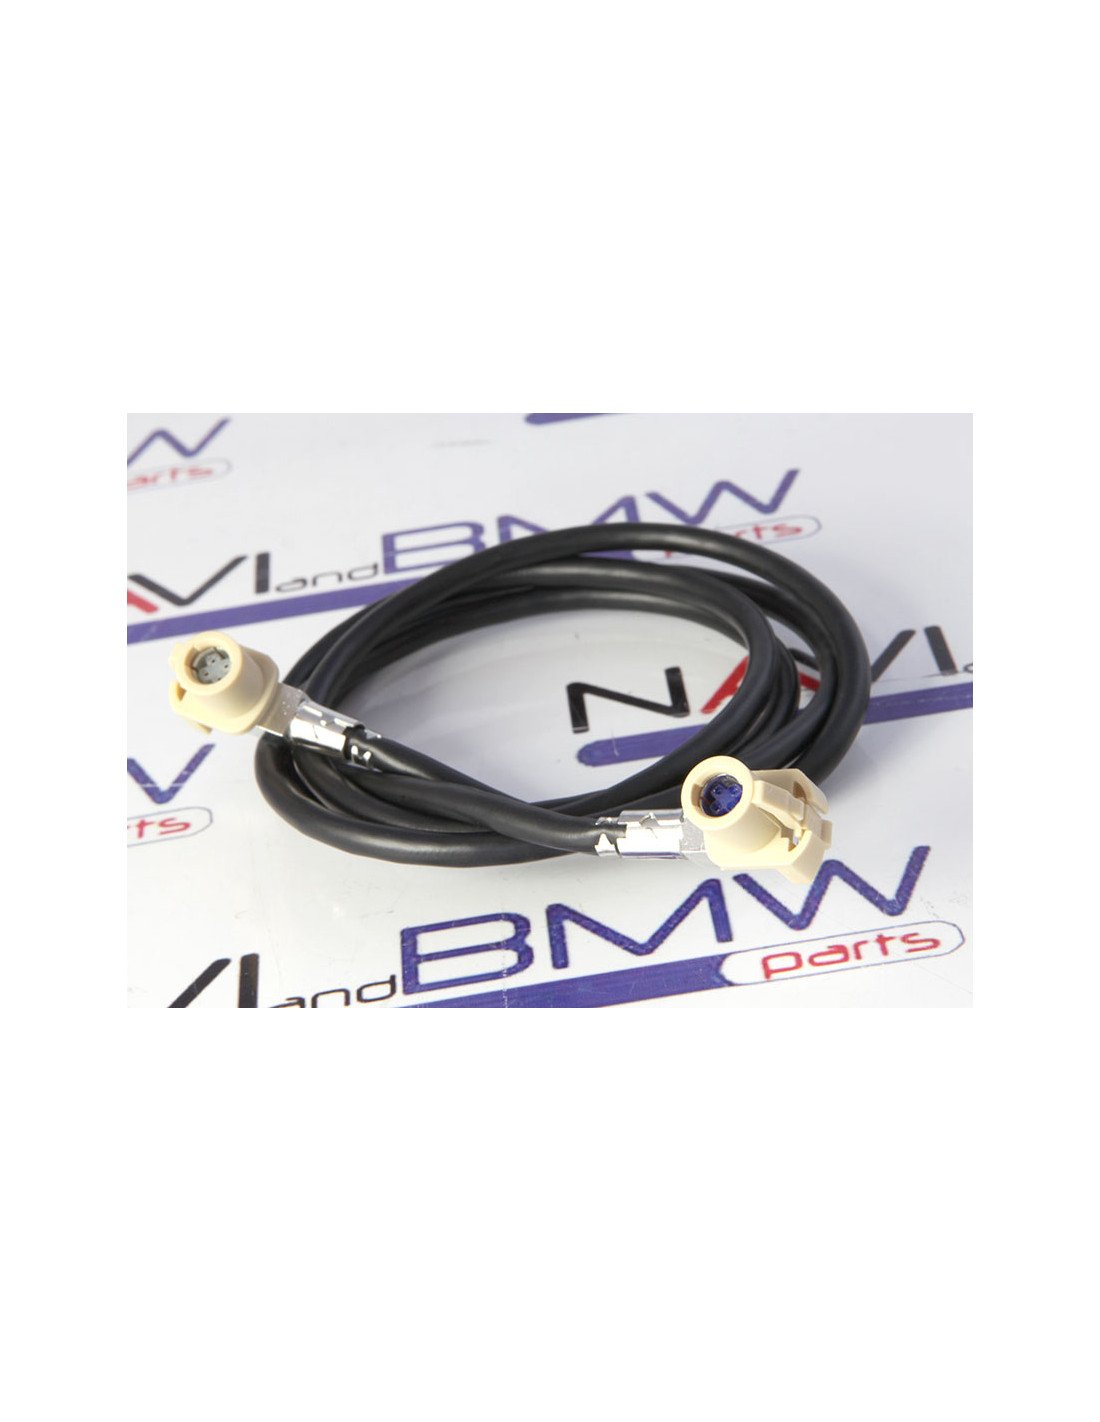 BMW CIC navigation system upgrade cable set